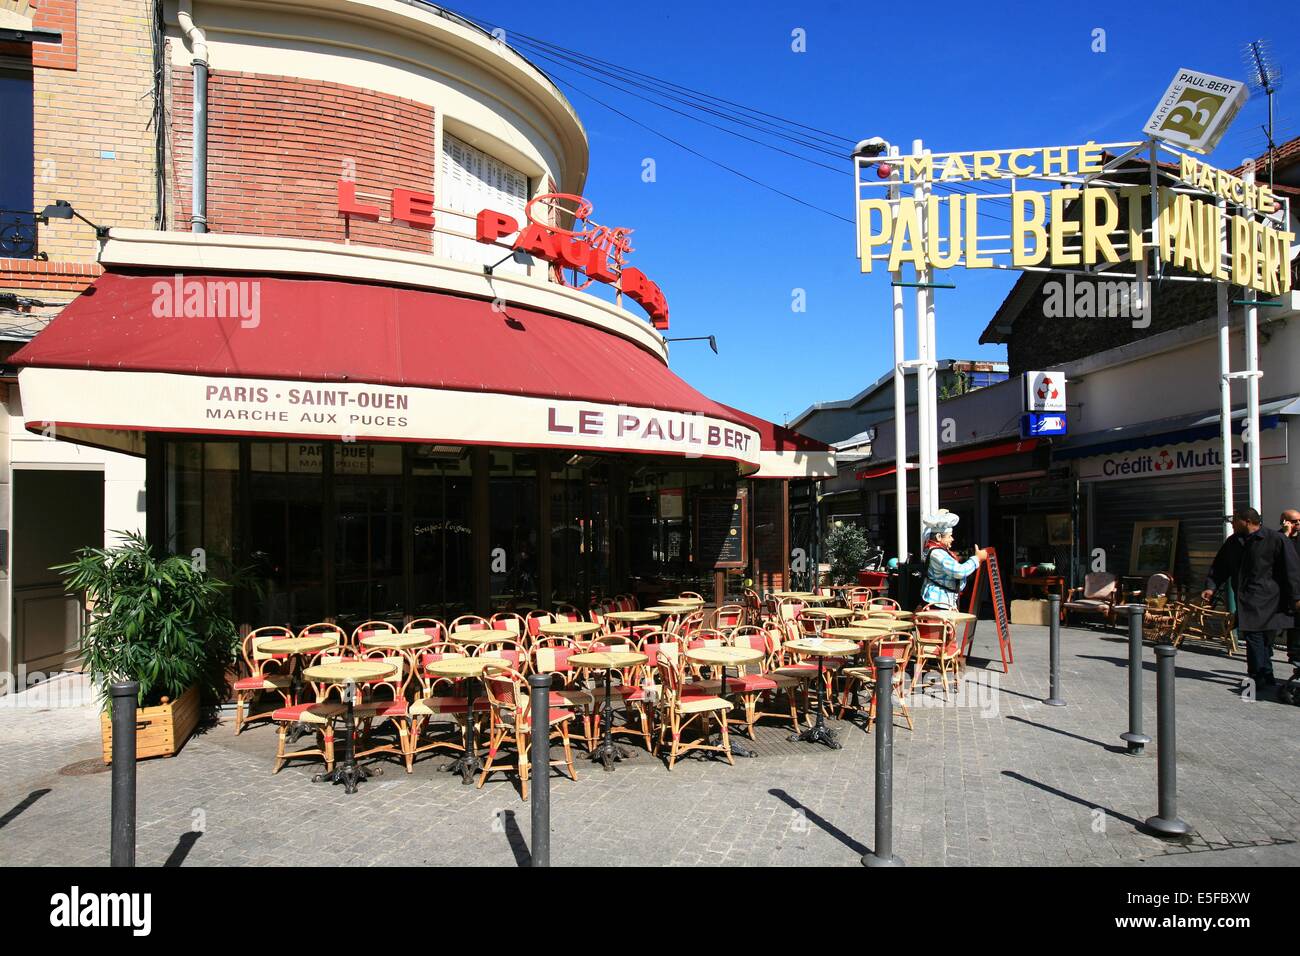 France, ile de france, paris 18e arrondissement, puces de saint ouen, entree du marche paul bert, restaurant bar, le paul bert, terrasse, Stock Photo